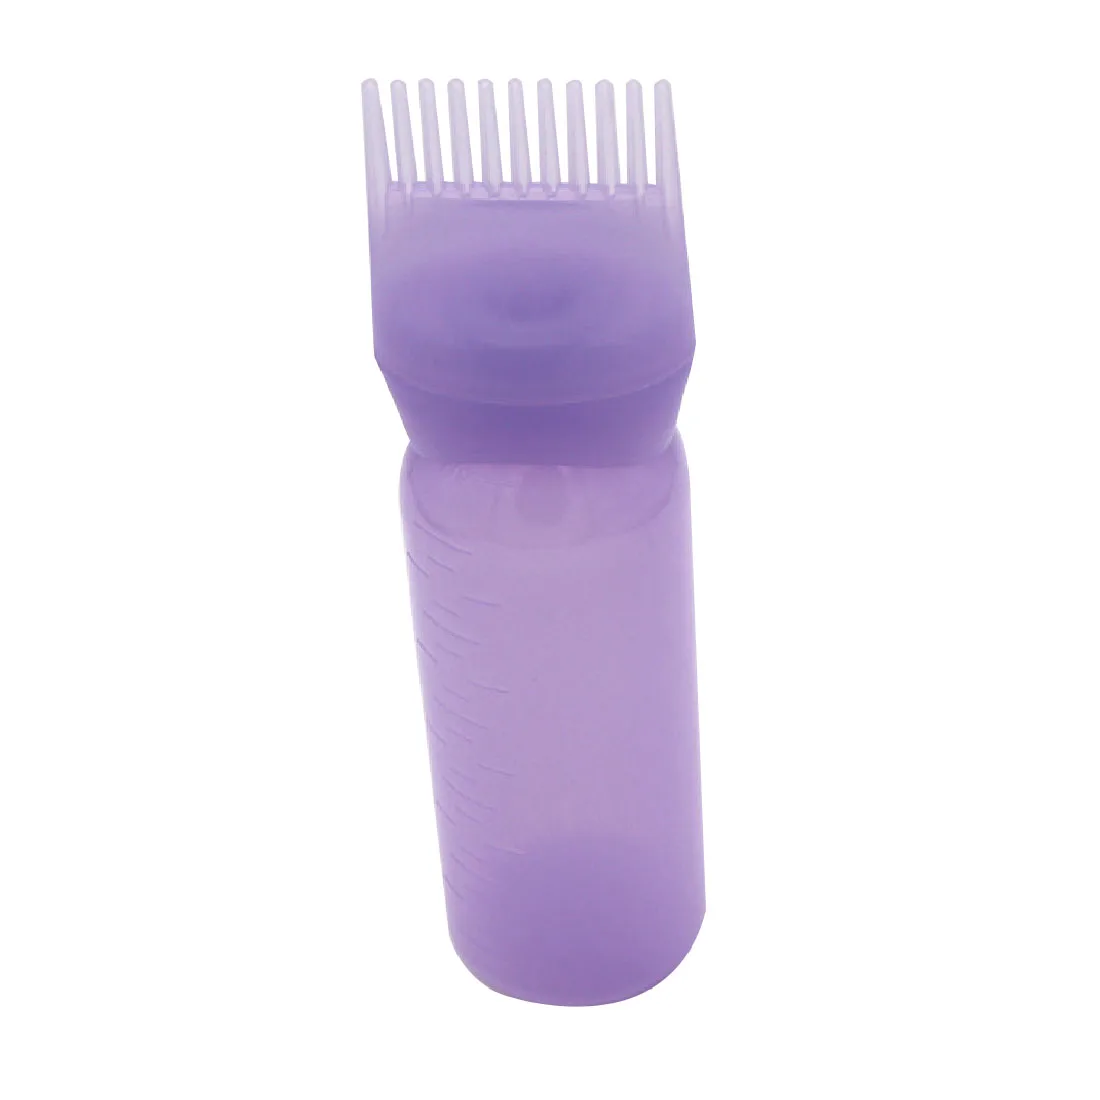 Лучший 120 мл пластик краска для волос наполнитель бутылки аппликатор с градуированной щеткой контейнер для таблеток салонное окрашивание волос Инструменты для укладки - Цвет: Фиолетовый